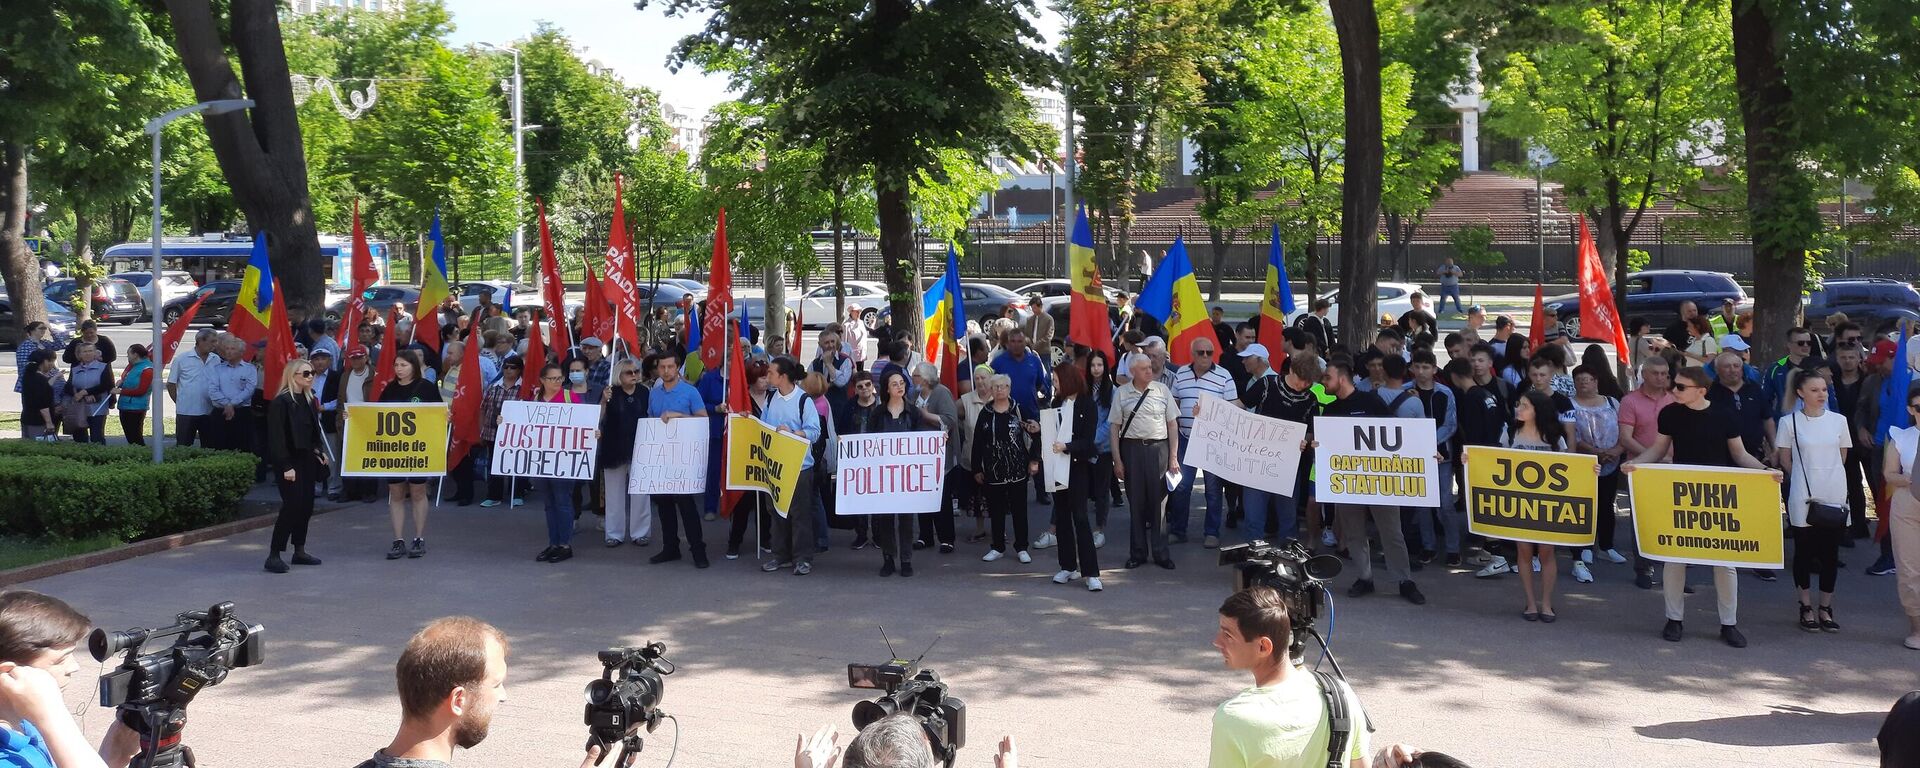 Протесты ПСРМ в Кишиневе - Sputnik Молдова, 1920, 25.05.2022